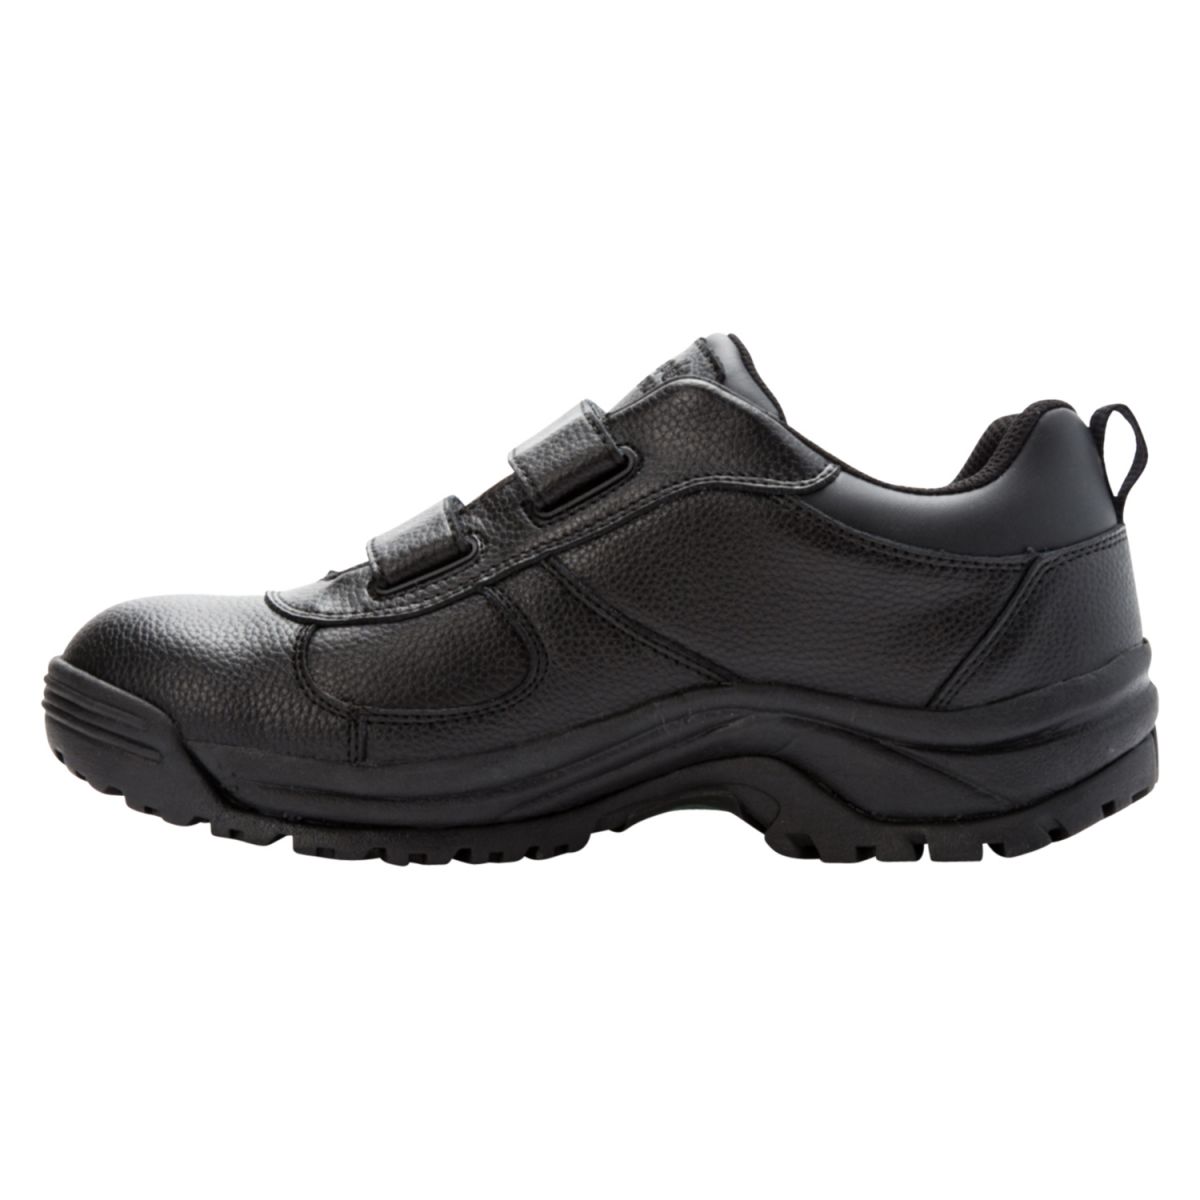 Propet Men's Cliff Walker Low Strap Waterproof Walking Shoe Black Leather - MBA023LBLK - image 4 of 6